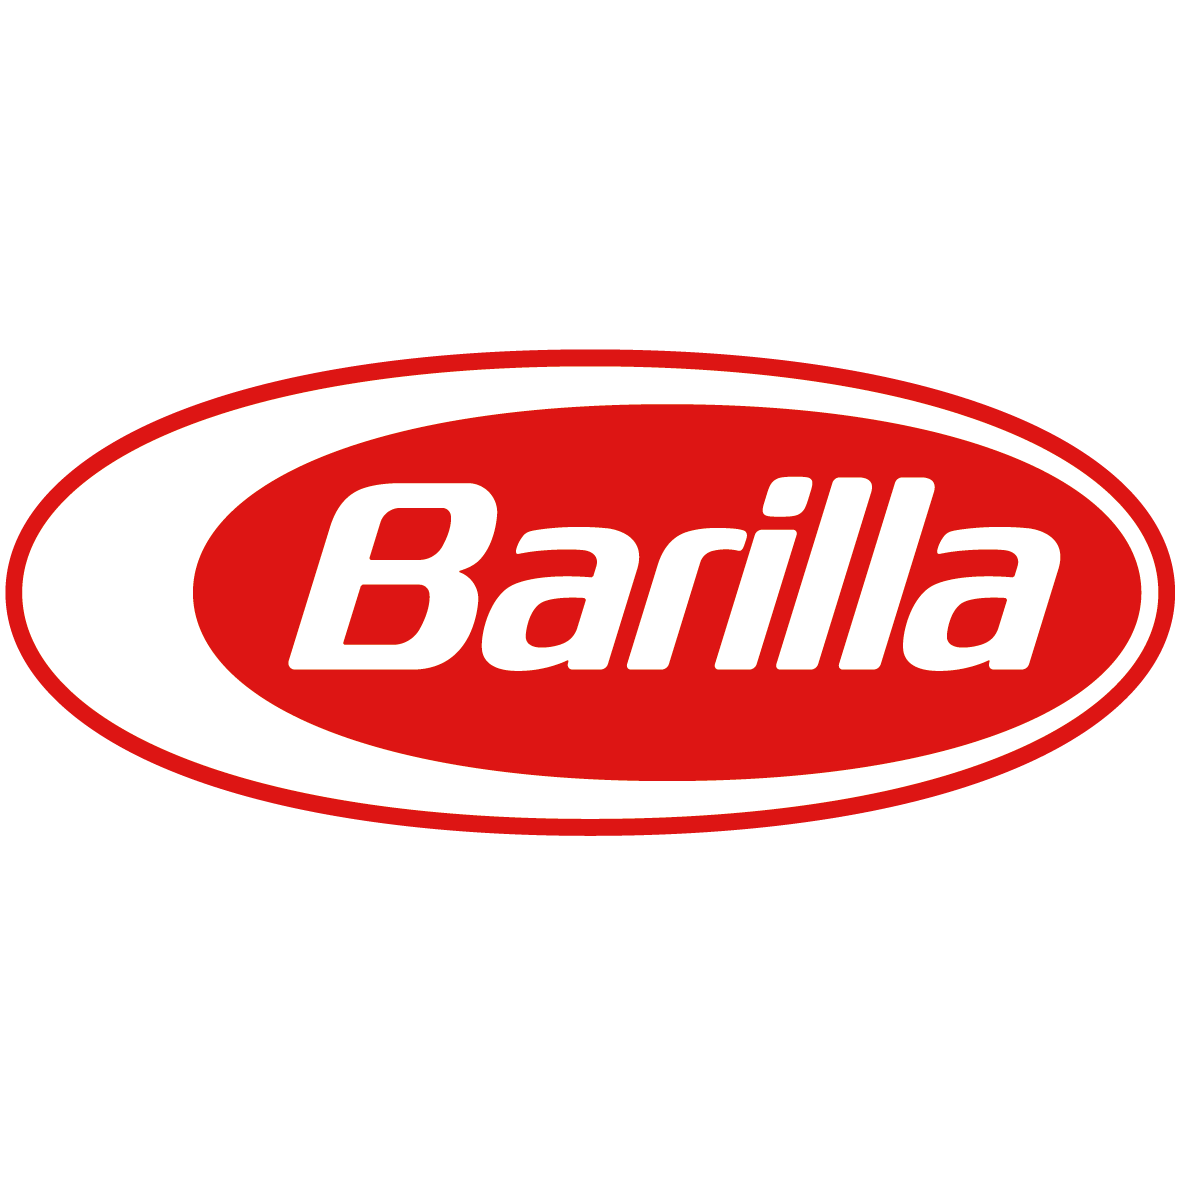 BARILLA PASTA WORLD CHAMPIONSHIP 2017